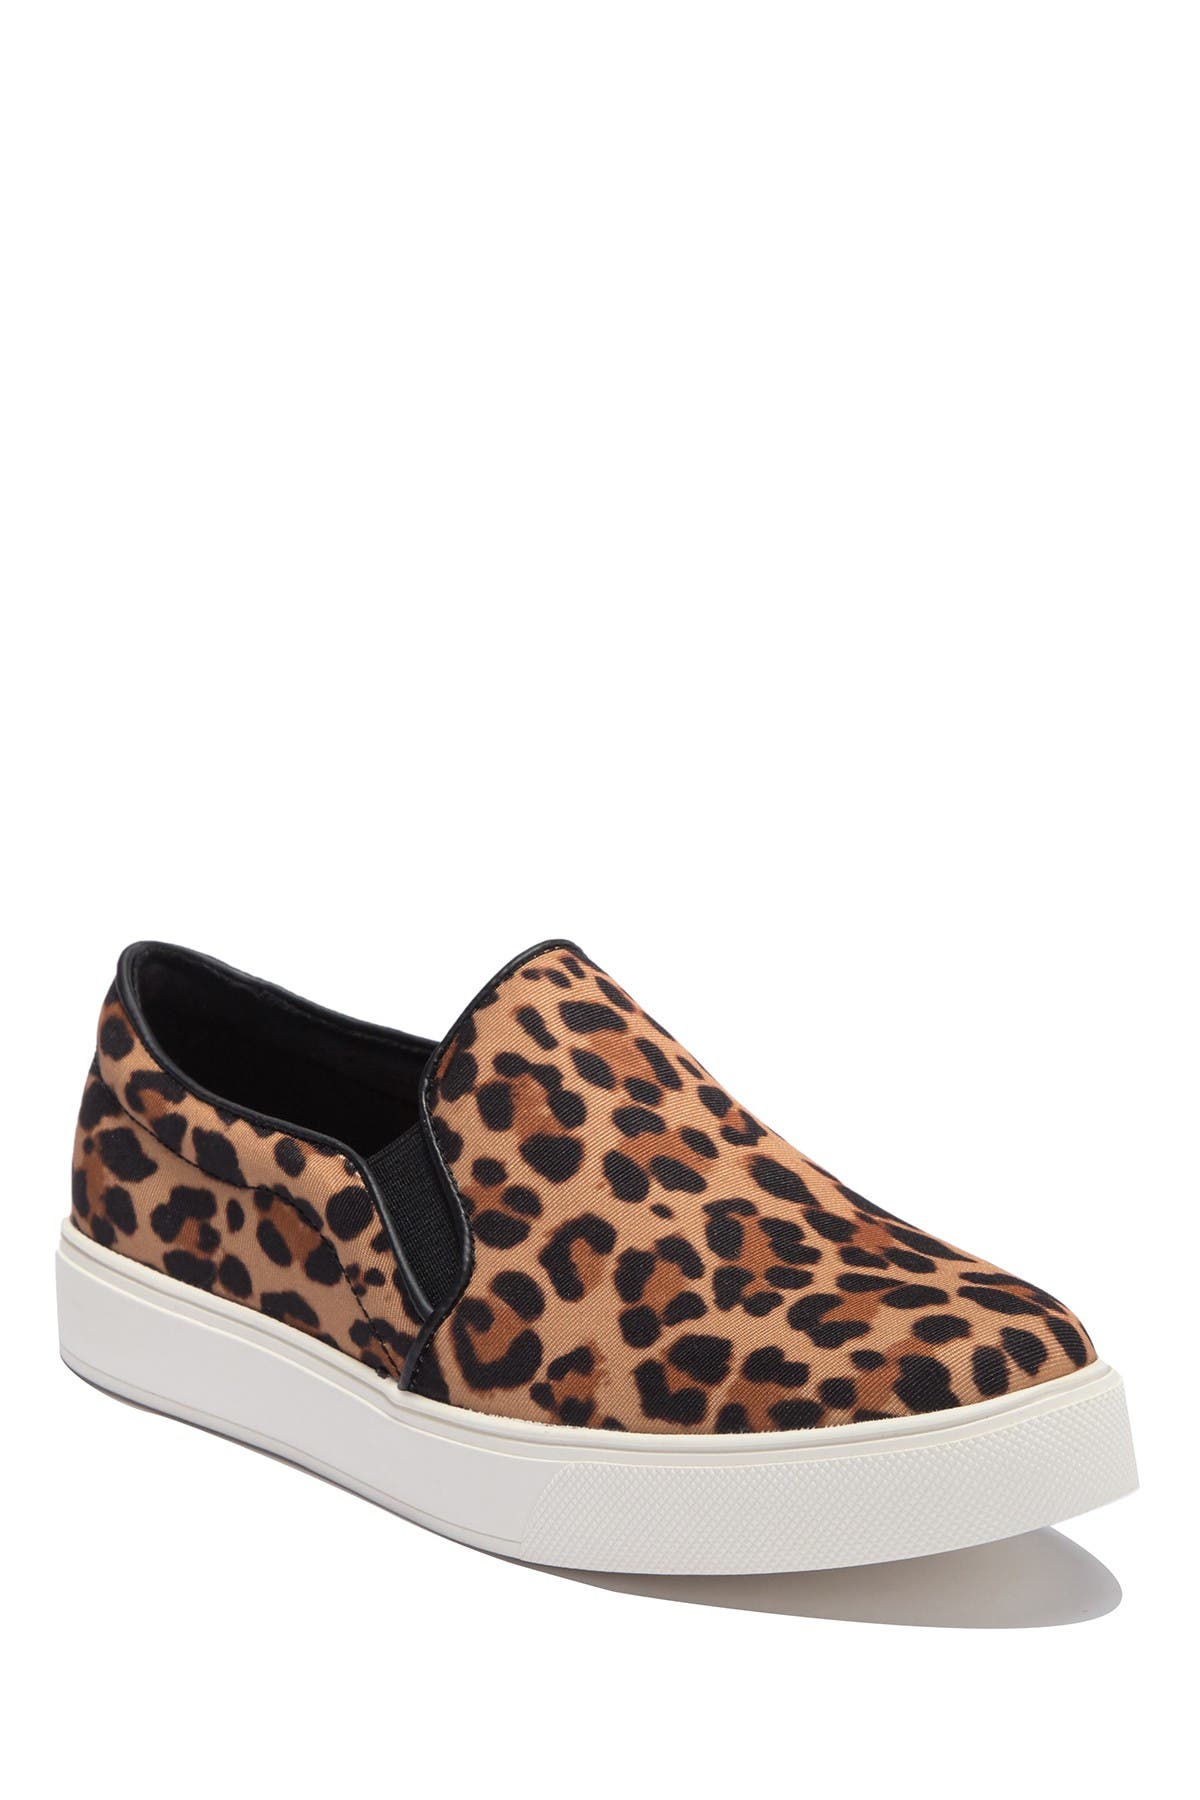 aldo leopard sneakers